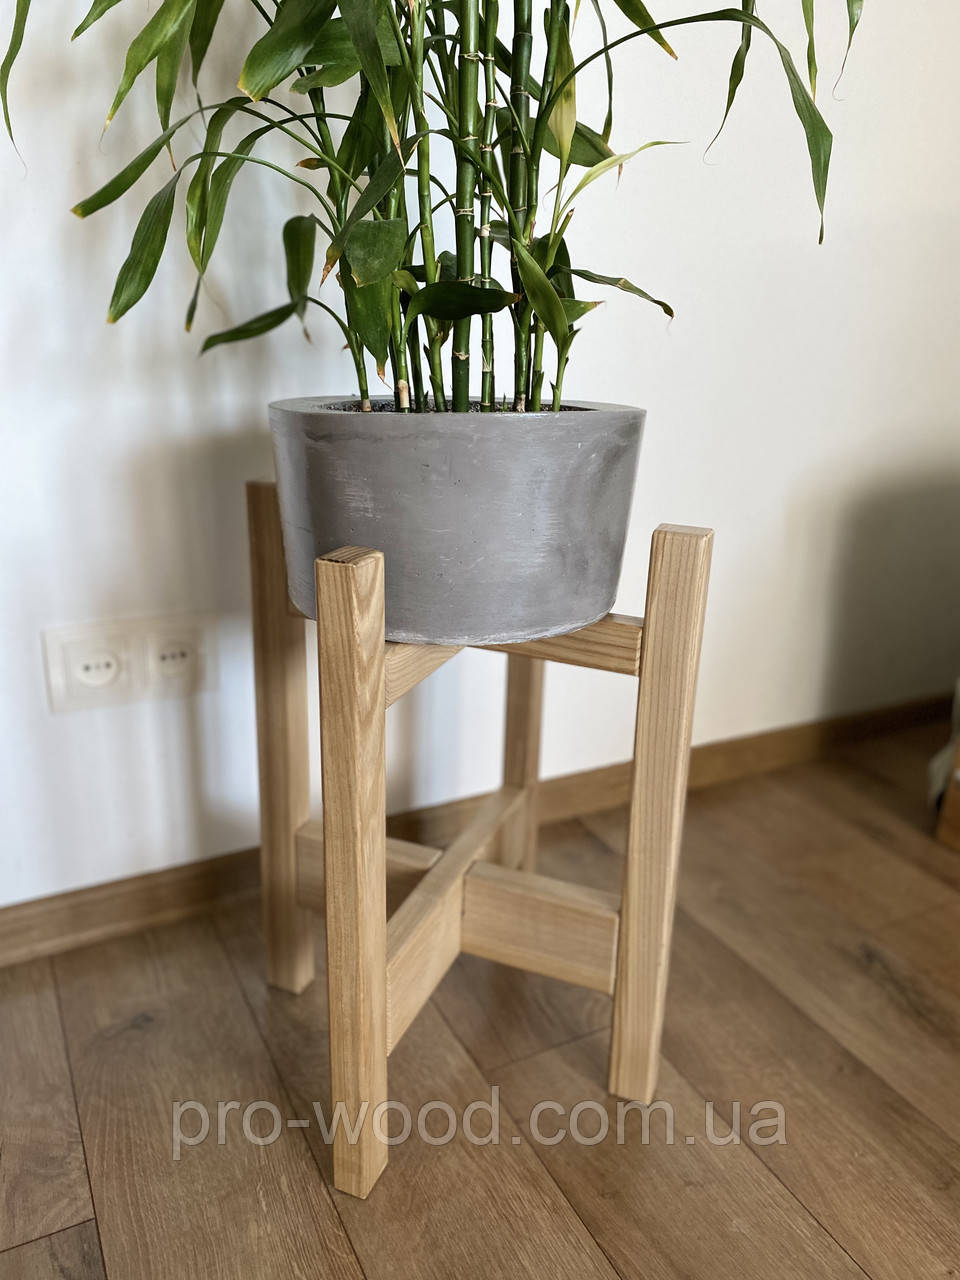 Підставка дерев'яна для квітів і рослин ясен 30х50 см